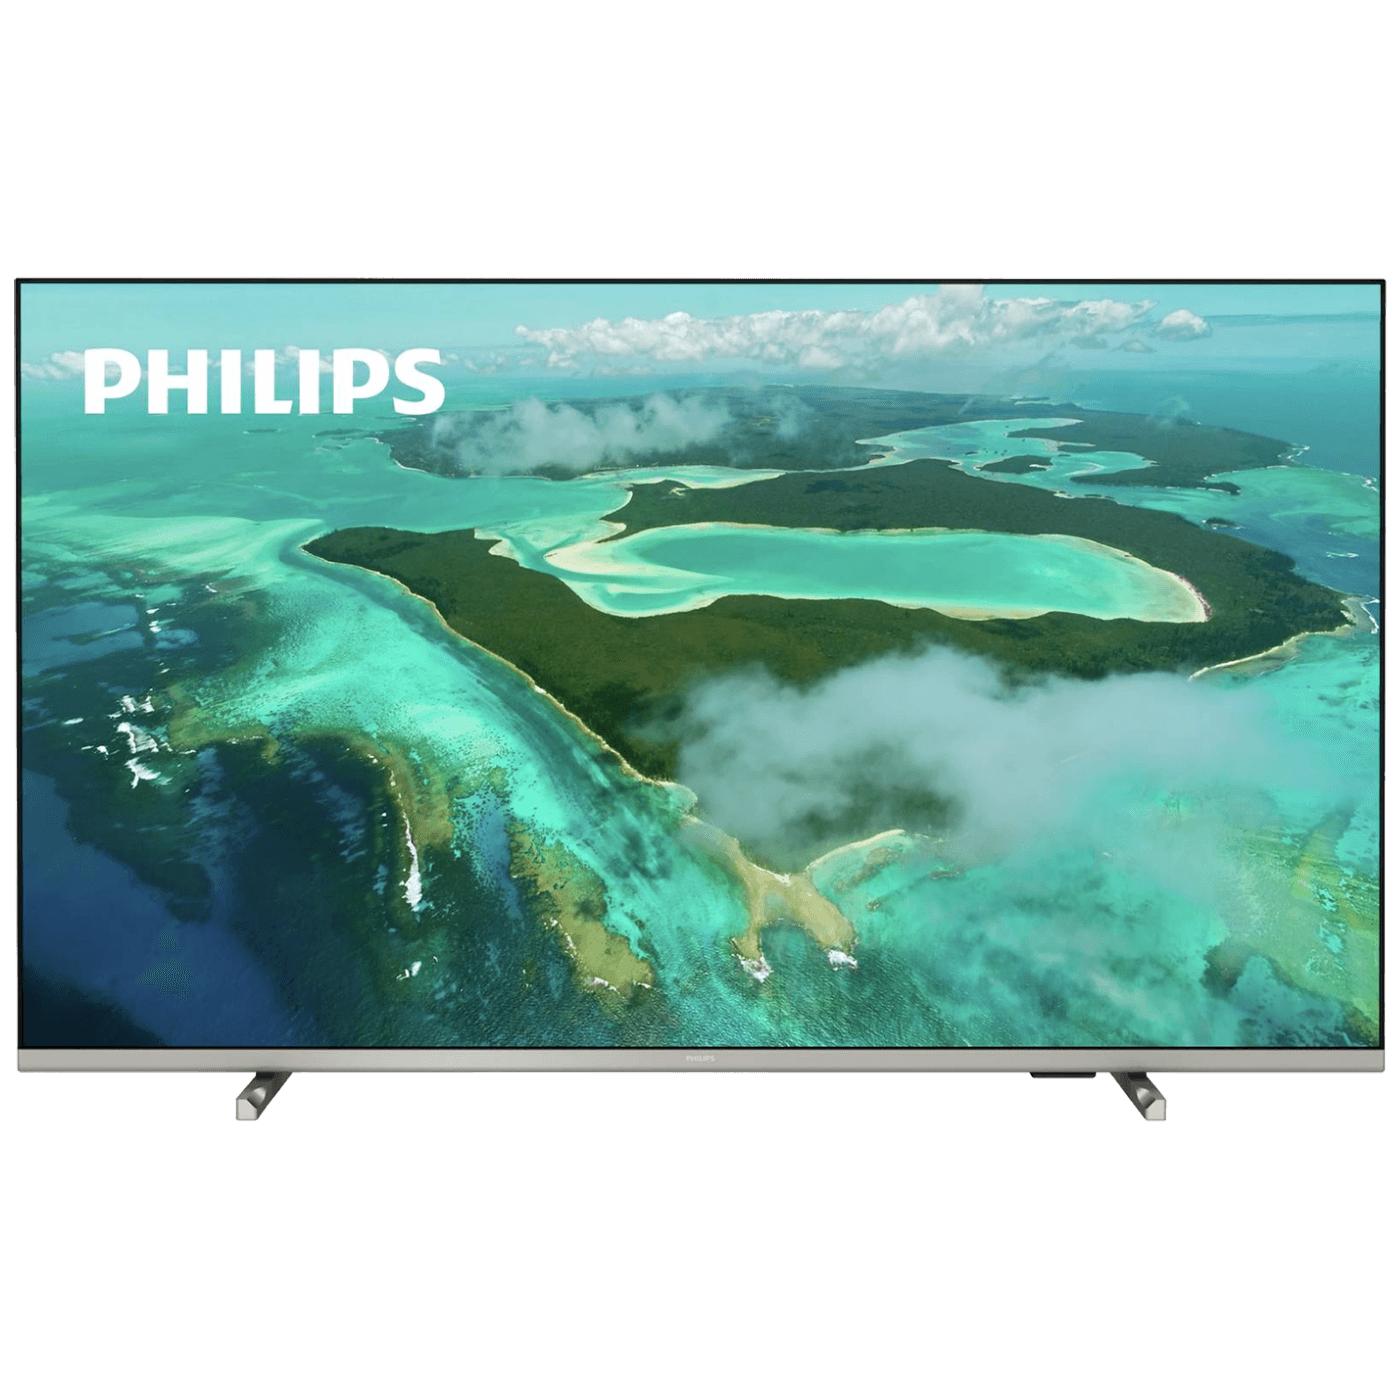 Philips TV - Smart 4K LED TV 55